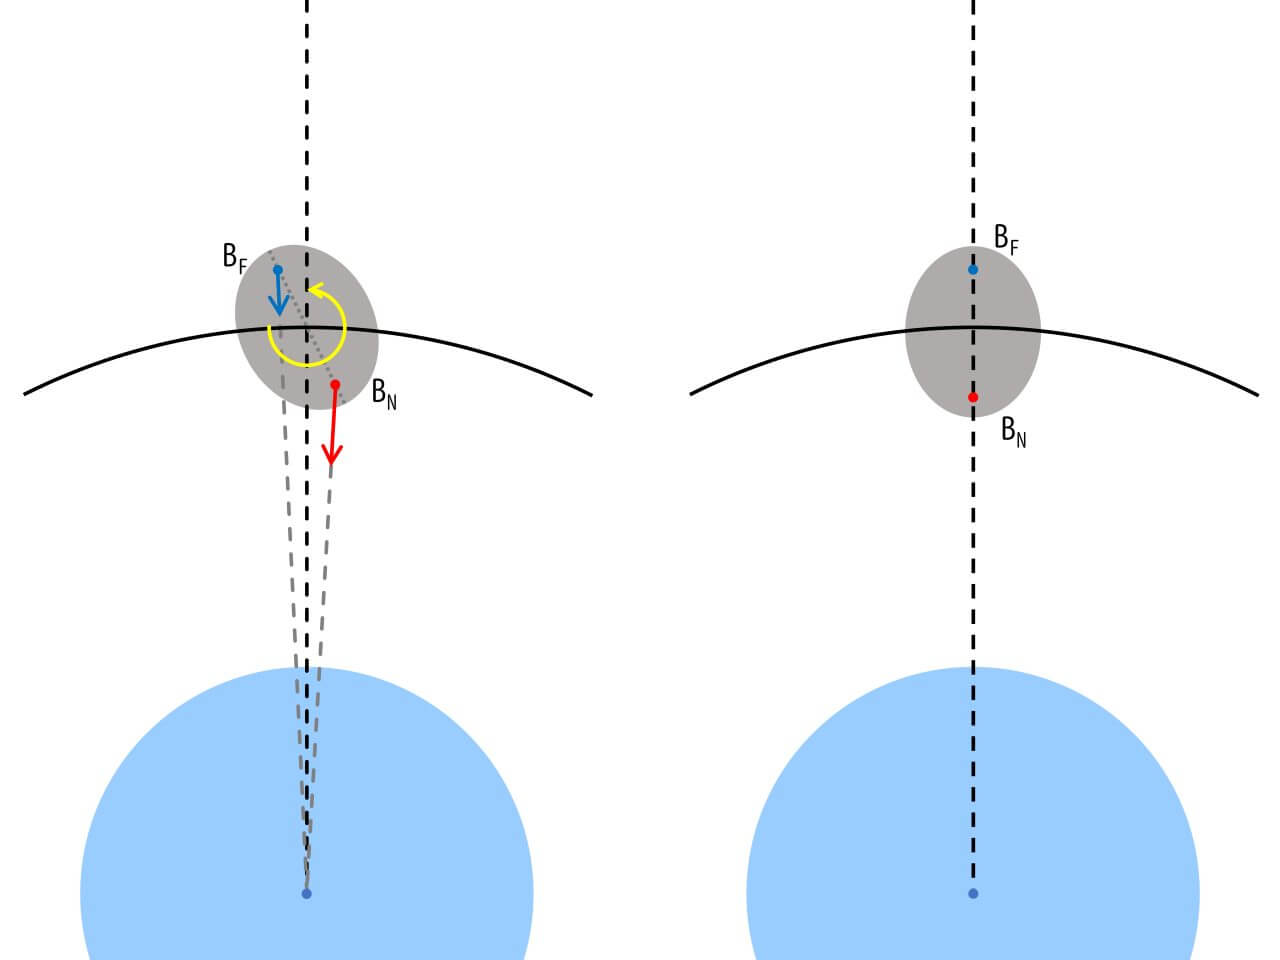 [▲ الشكل 1: رسم تخطيطي مفاهيمي لعزم دوران المد والجزر. إذا كانت الفترة المدارية للكائن B (الرمادي) الذي يدور حول الكائن A (الأزرق) هي نفس فترة الدوران ، فإن المحور الرئيسي للكائن B يتم محاذاته مع الكائن A (الشكل الأيمن). ومع ذلك ، إذا لم تتطابق الفترة المدارية مع فترة الدوران ، فلن يصطفوا في خط مستقيم ، وستعمل القوة على استعادة الانحراف (الشكل الأيسر). تسمى الظاهرة التي تتغير فيها فترة دوران الجسم السماوي B بسبب هذا الإجراء عزم دوران المد والجزر.  (مصدر الصورة: WikiMedia Commons / Matryosika)]